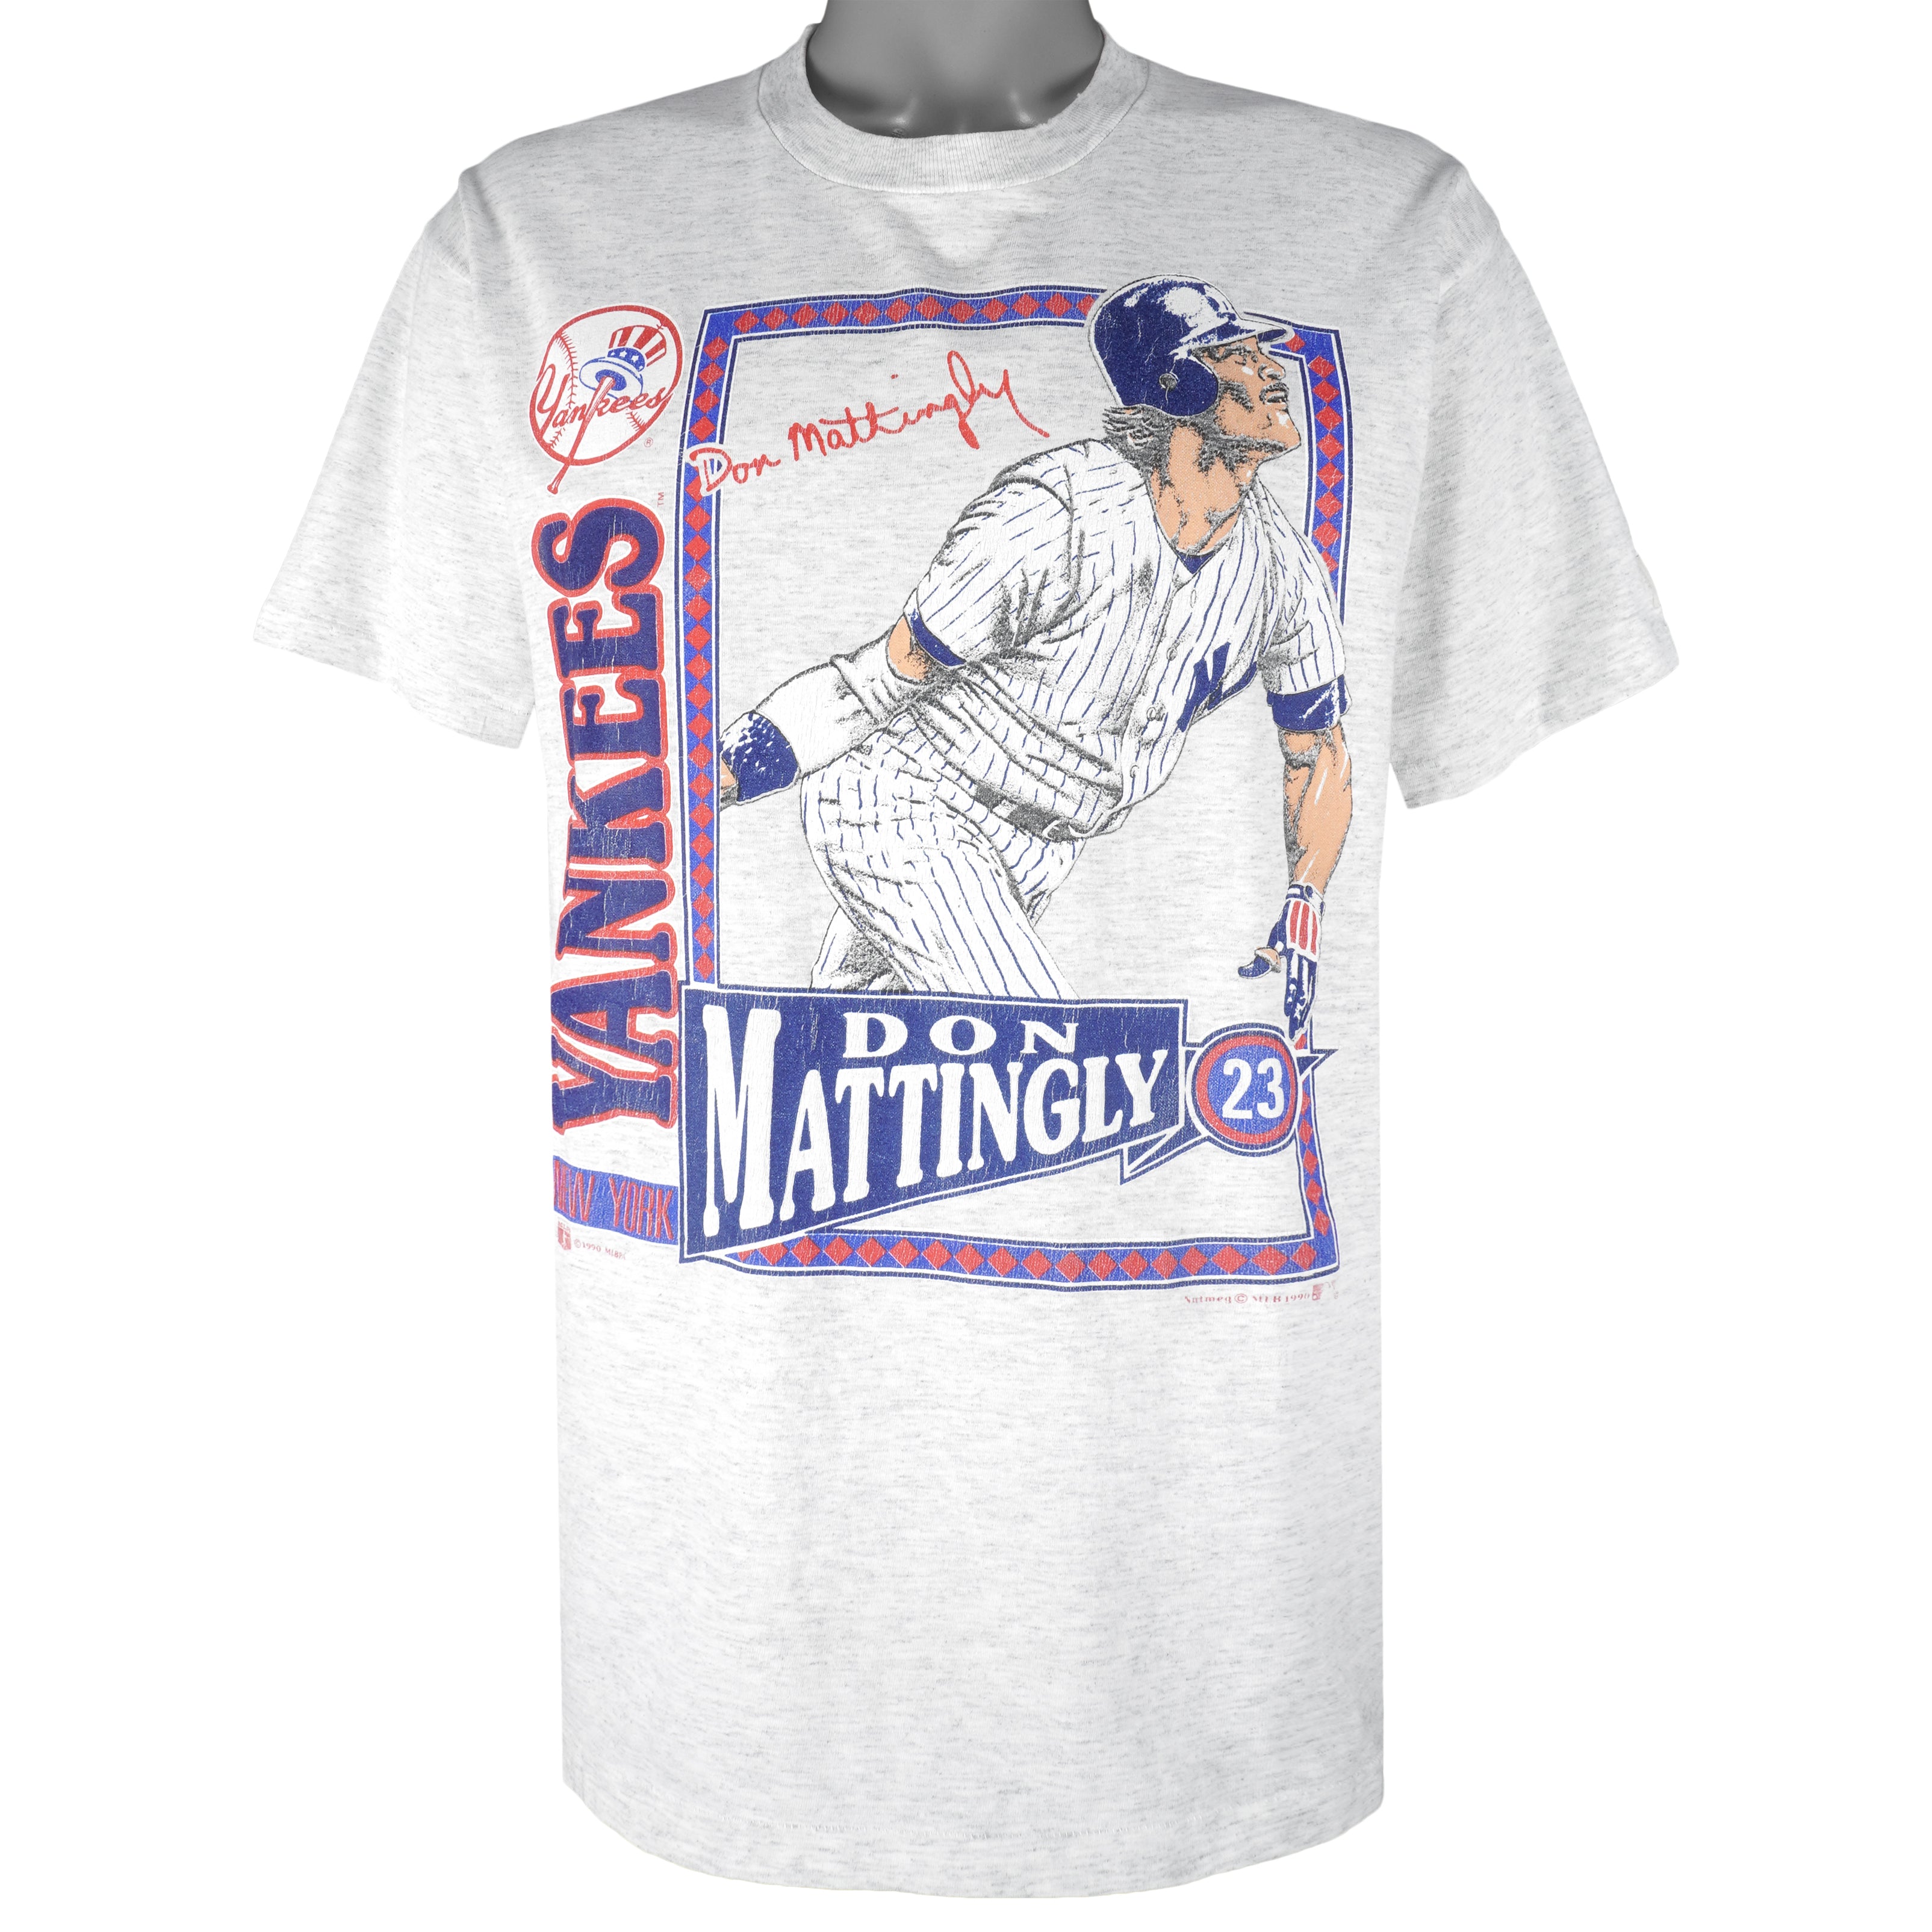 Vintage New York Yankees T Shirt Tee CSA Size XXL 2XL MLB 